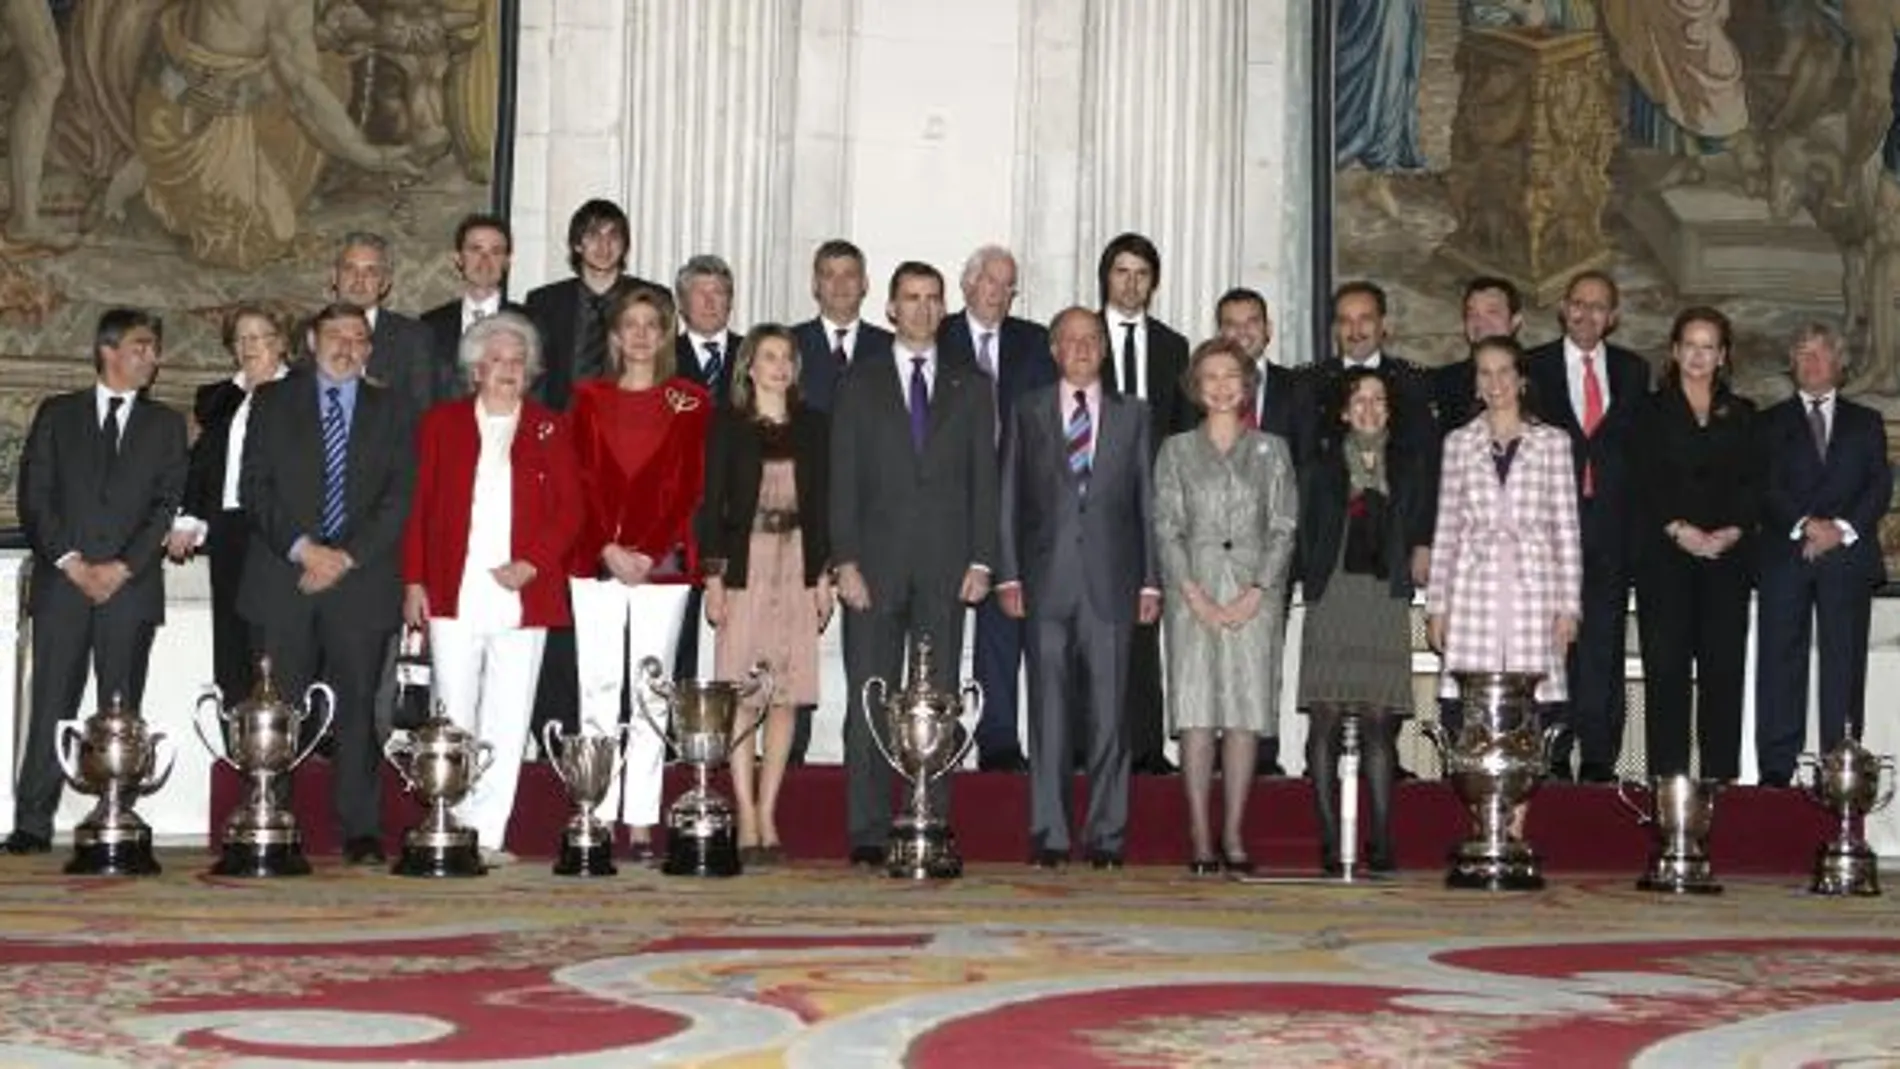 Los Reyes, acompañados por los Príncipes de Asturias, las infantas Elena y Cristina, la ministra de Educación, Mercedes Cabrera, el secretario de Estado para el Deporte, Jaime Lissavetzky, y la infanta Pilar, posan con los galardonados